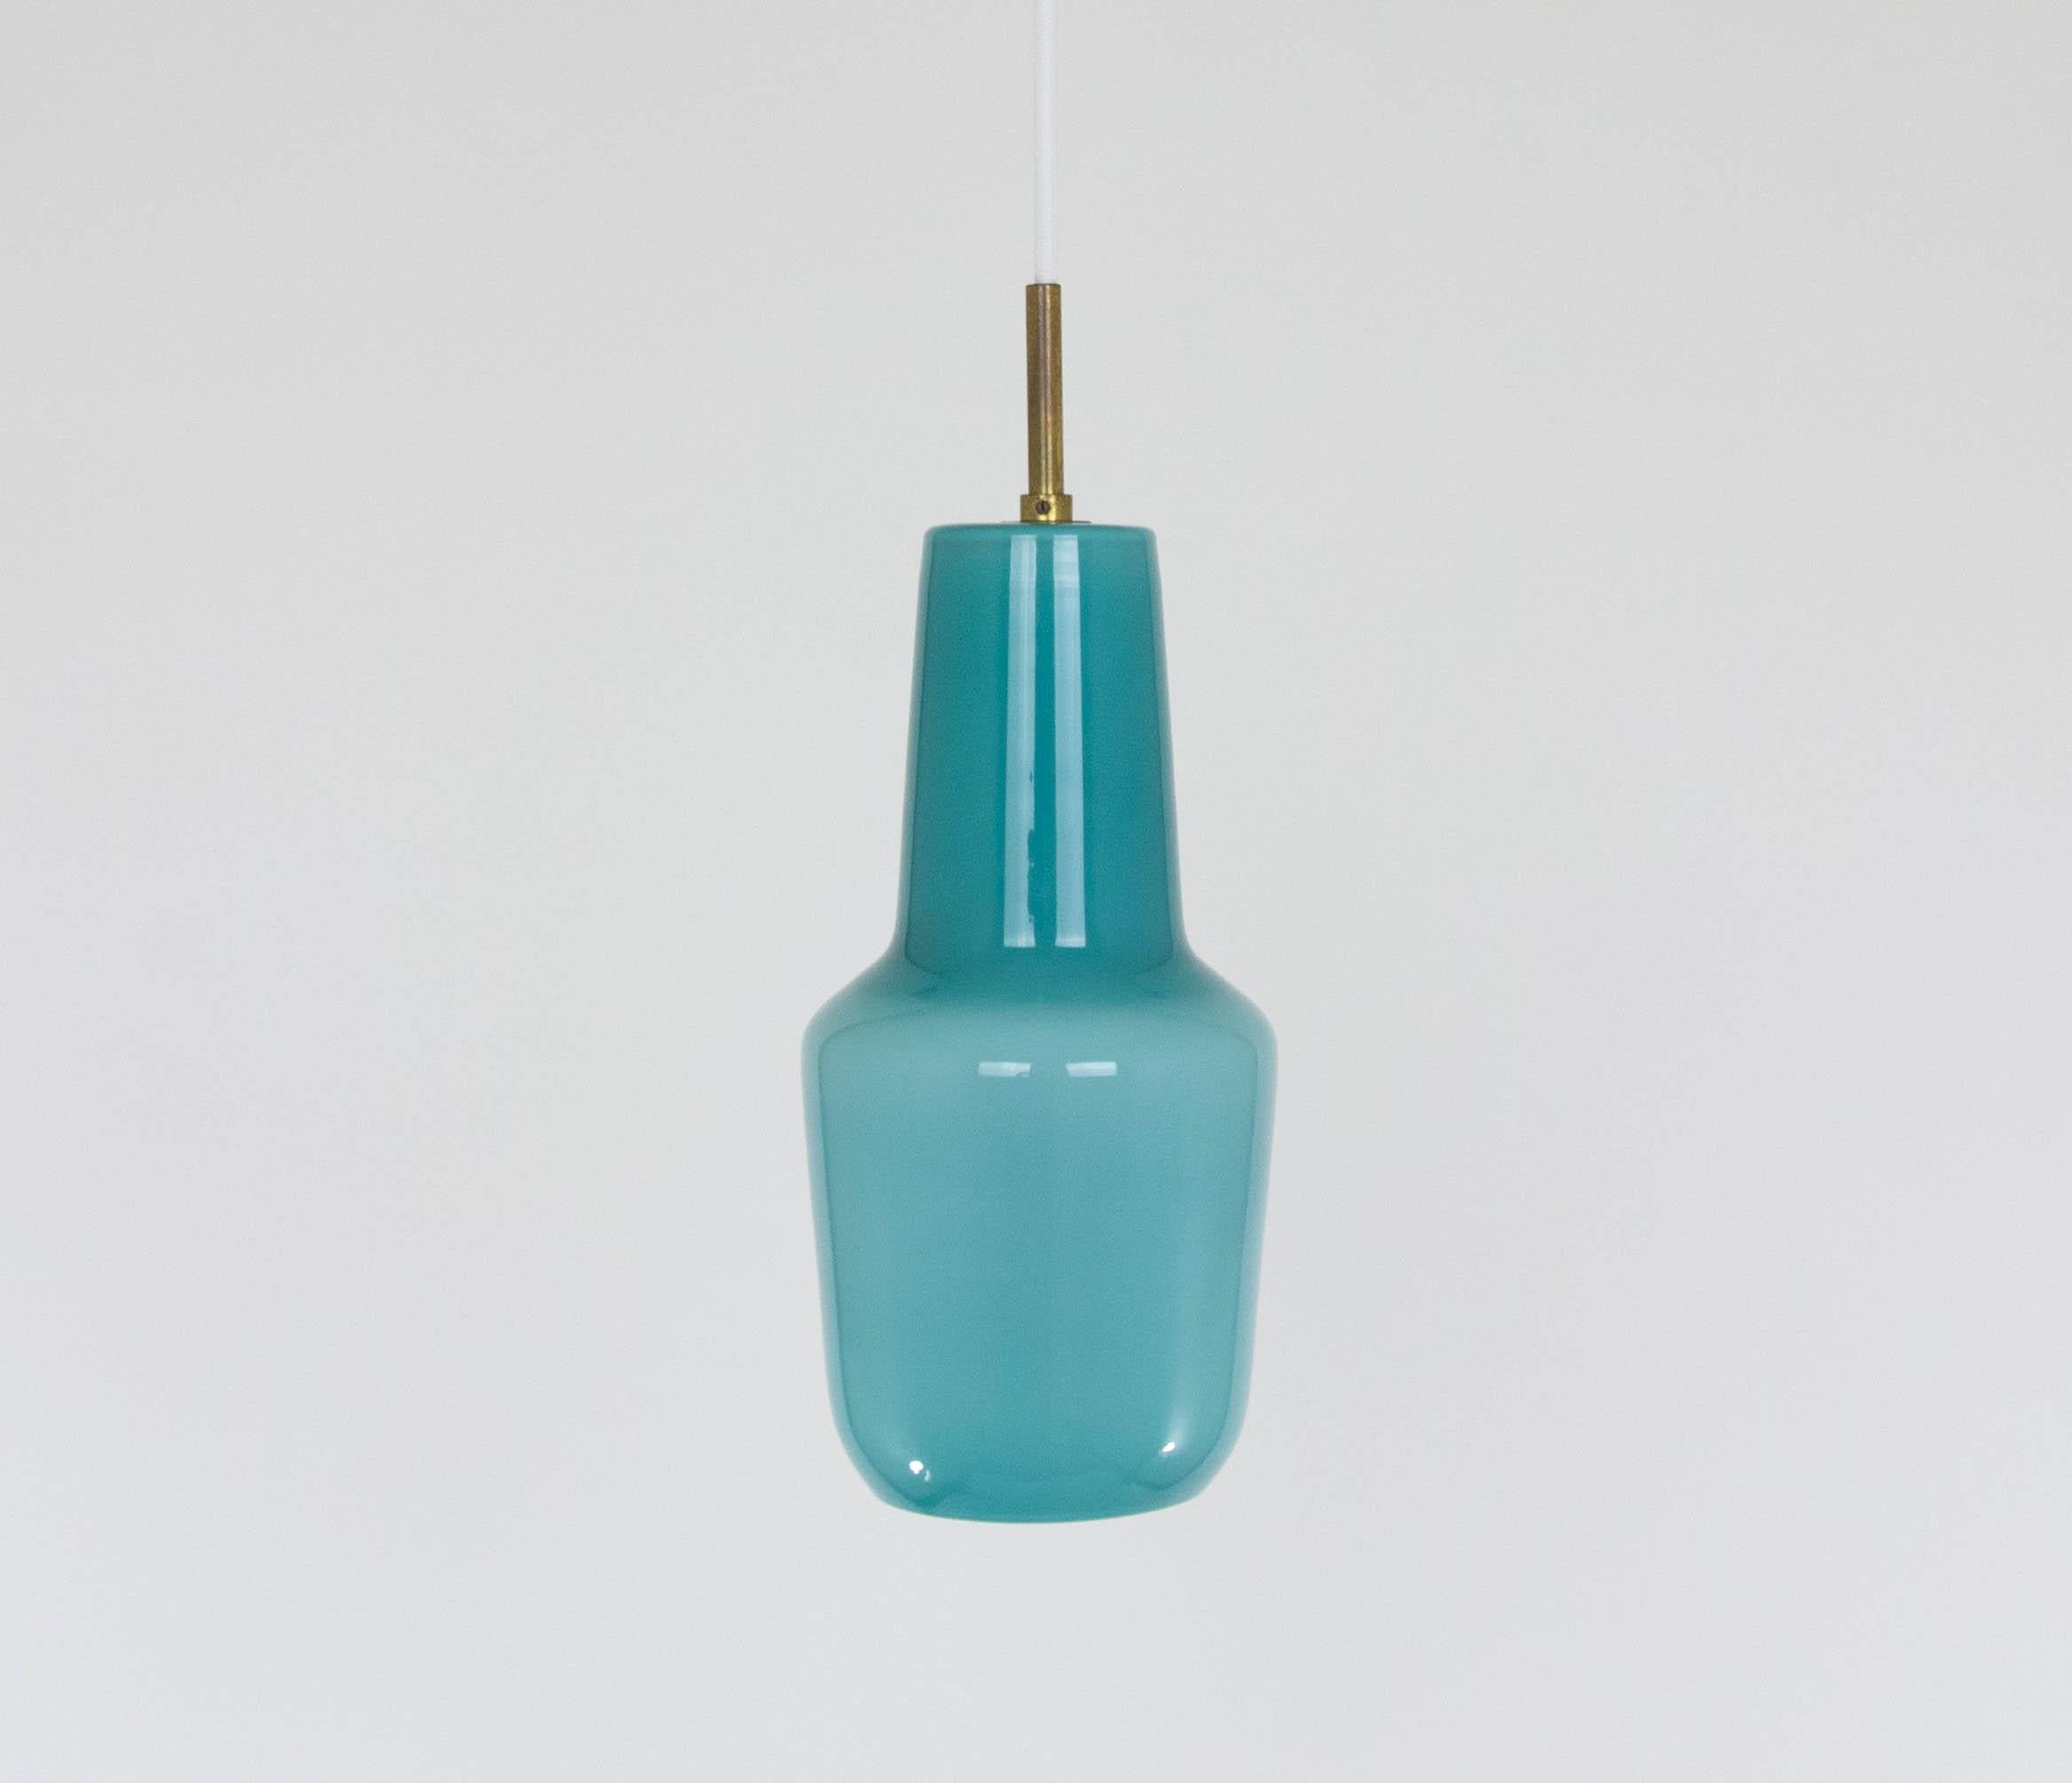 Pendentif en verre turquoise soufflé à la main, conçu par Massimo Vignelli au début de son impressionnante carrière dans le design et produit par le spécialiste du verre de Murano, Venini.

Ce modèle a été fabriqué en trois tailles : 25 cm, 30 cm et